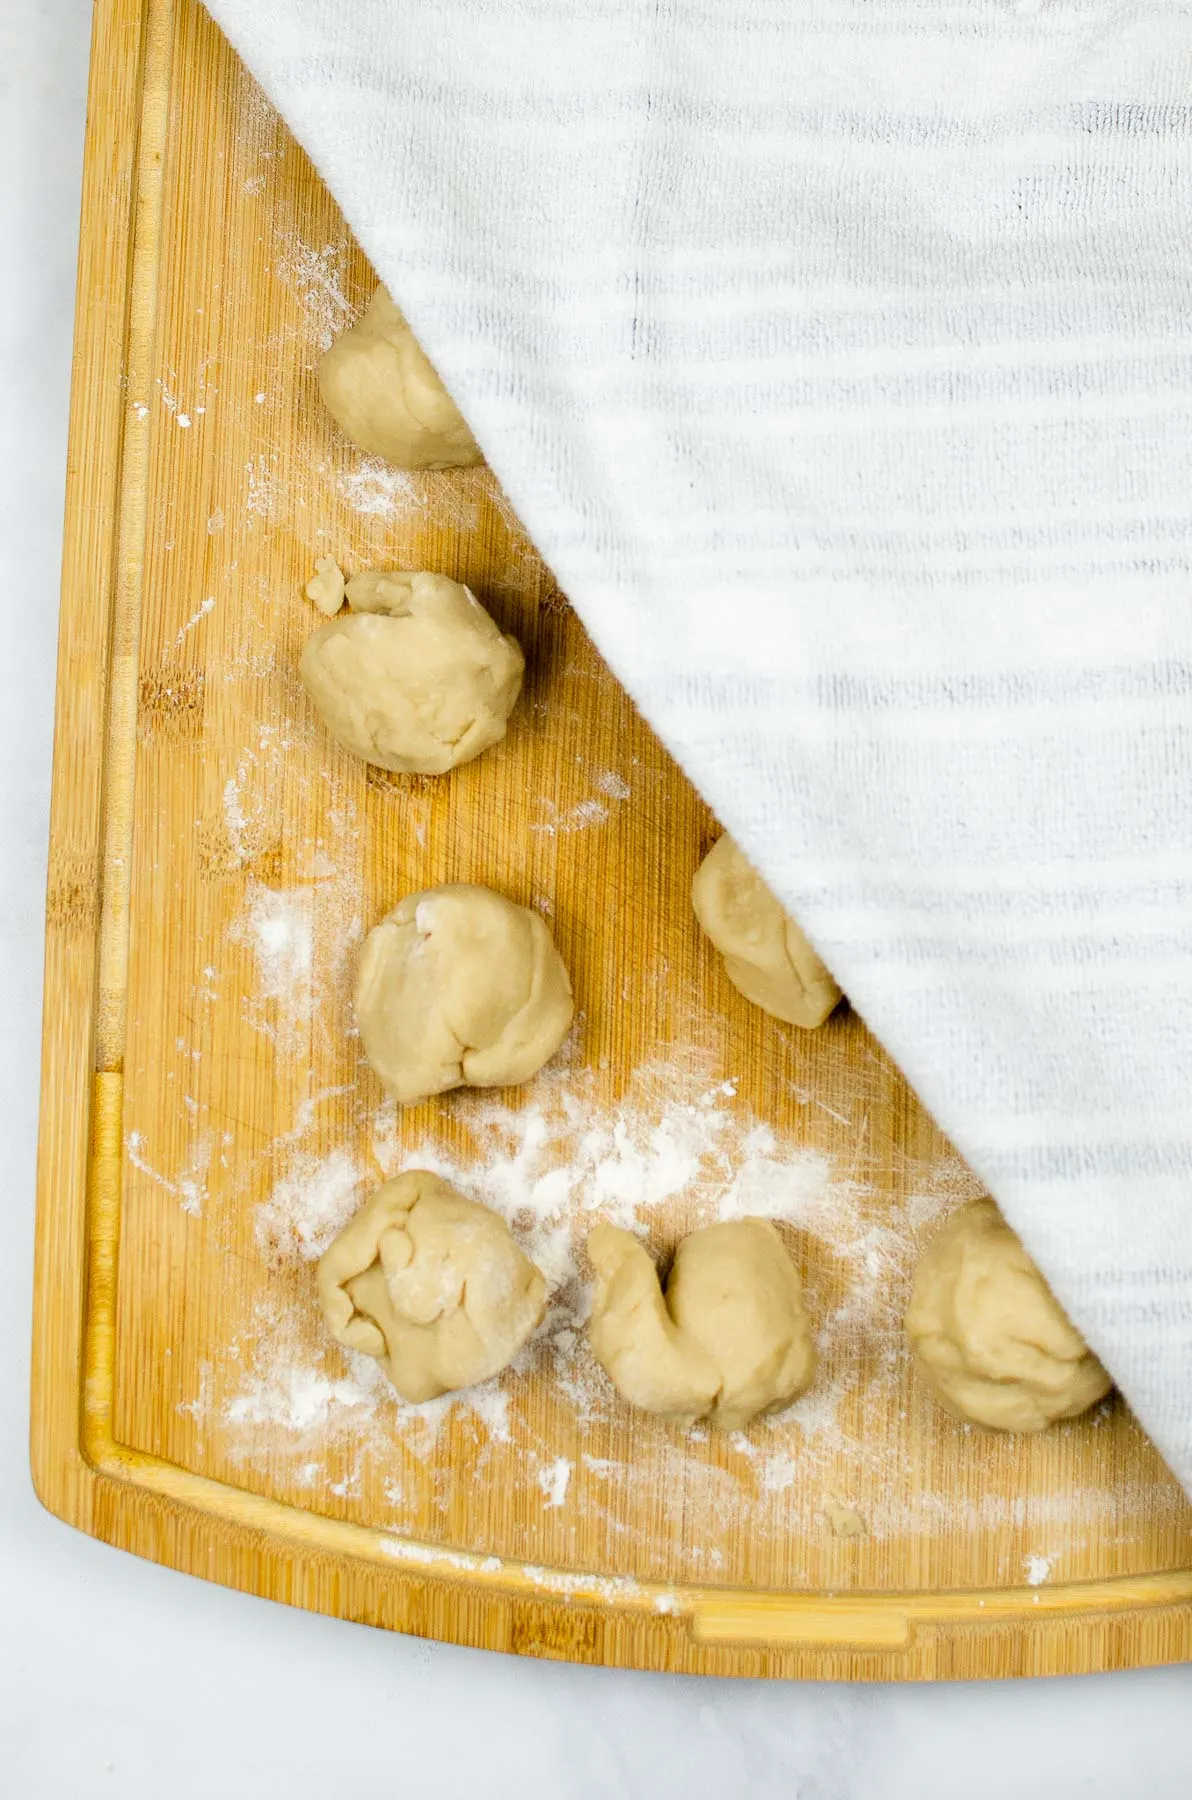 Flour tortilla dough rolled into small balls.